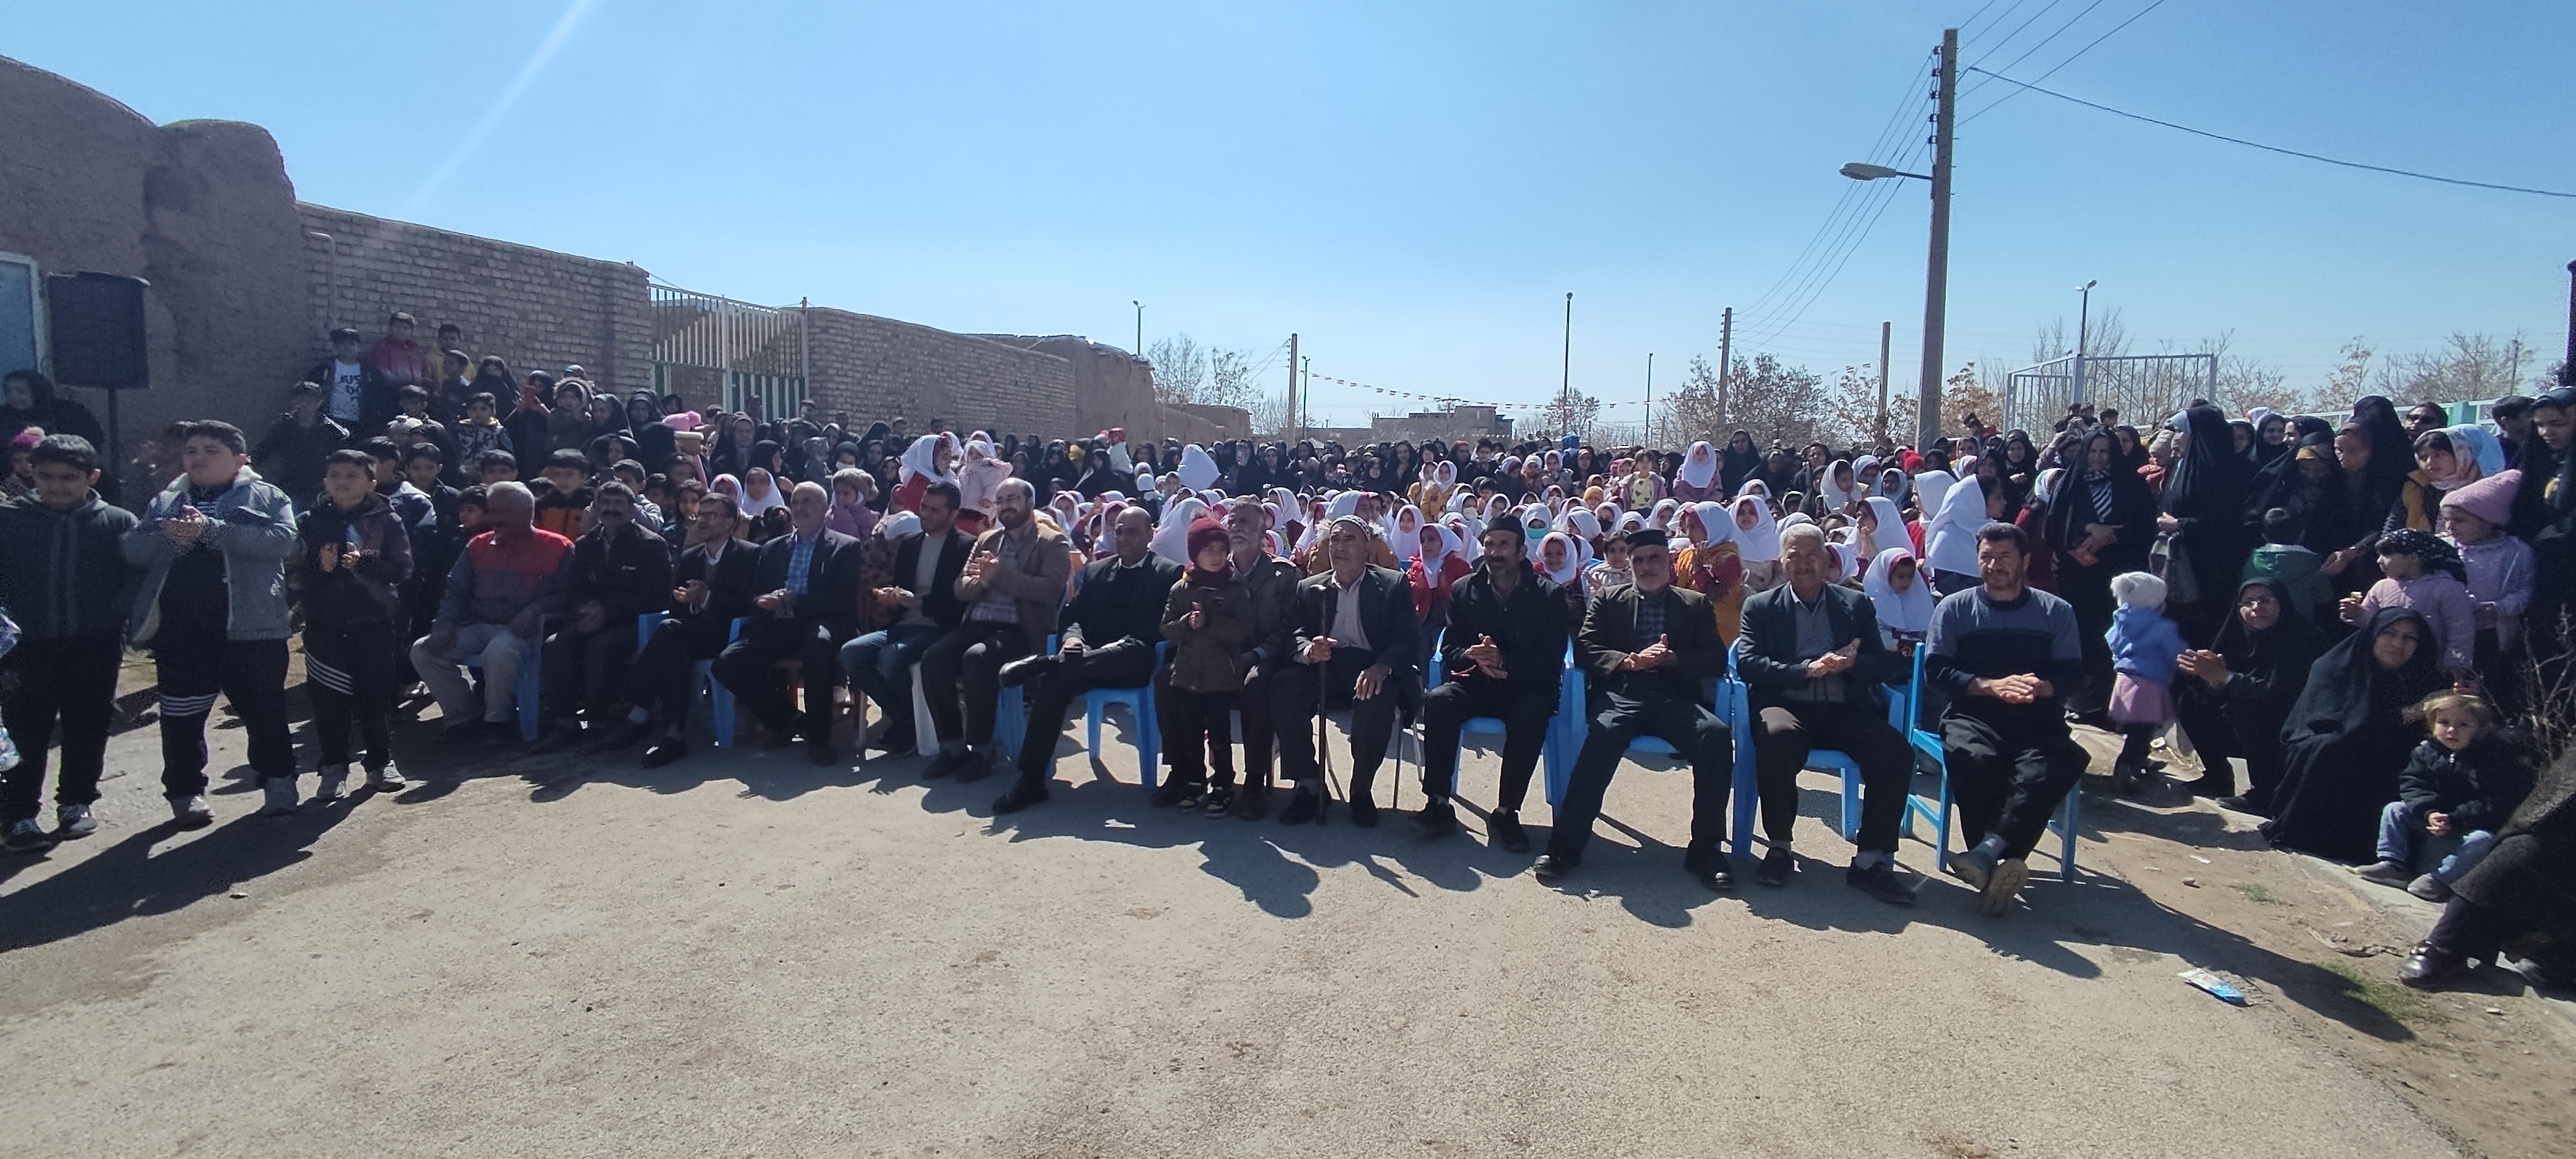 سومین جشنواره آیین پیش بهاری "ناقالدی" در کانون استان مرکزی برگزار شد